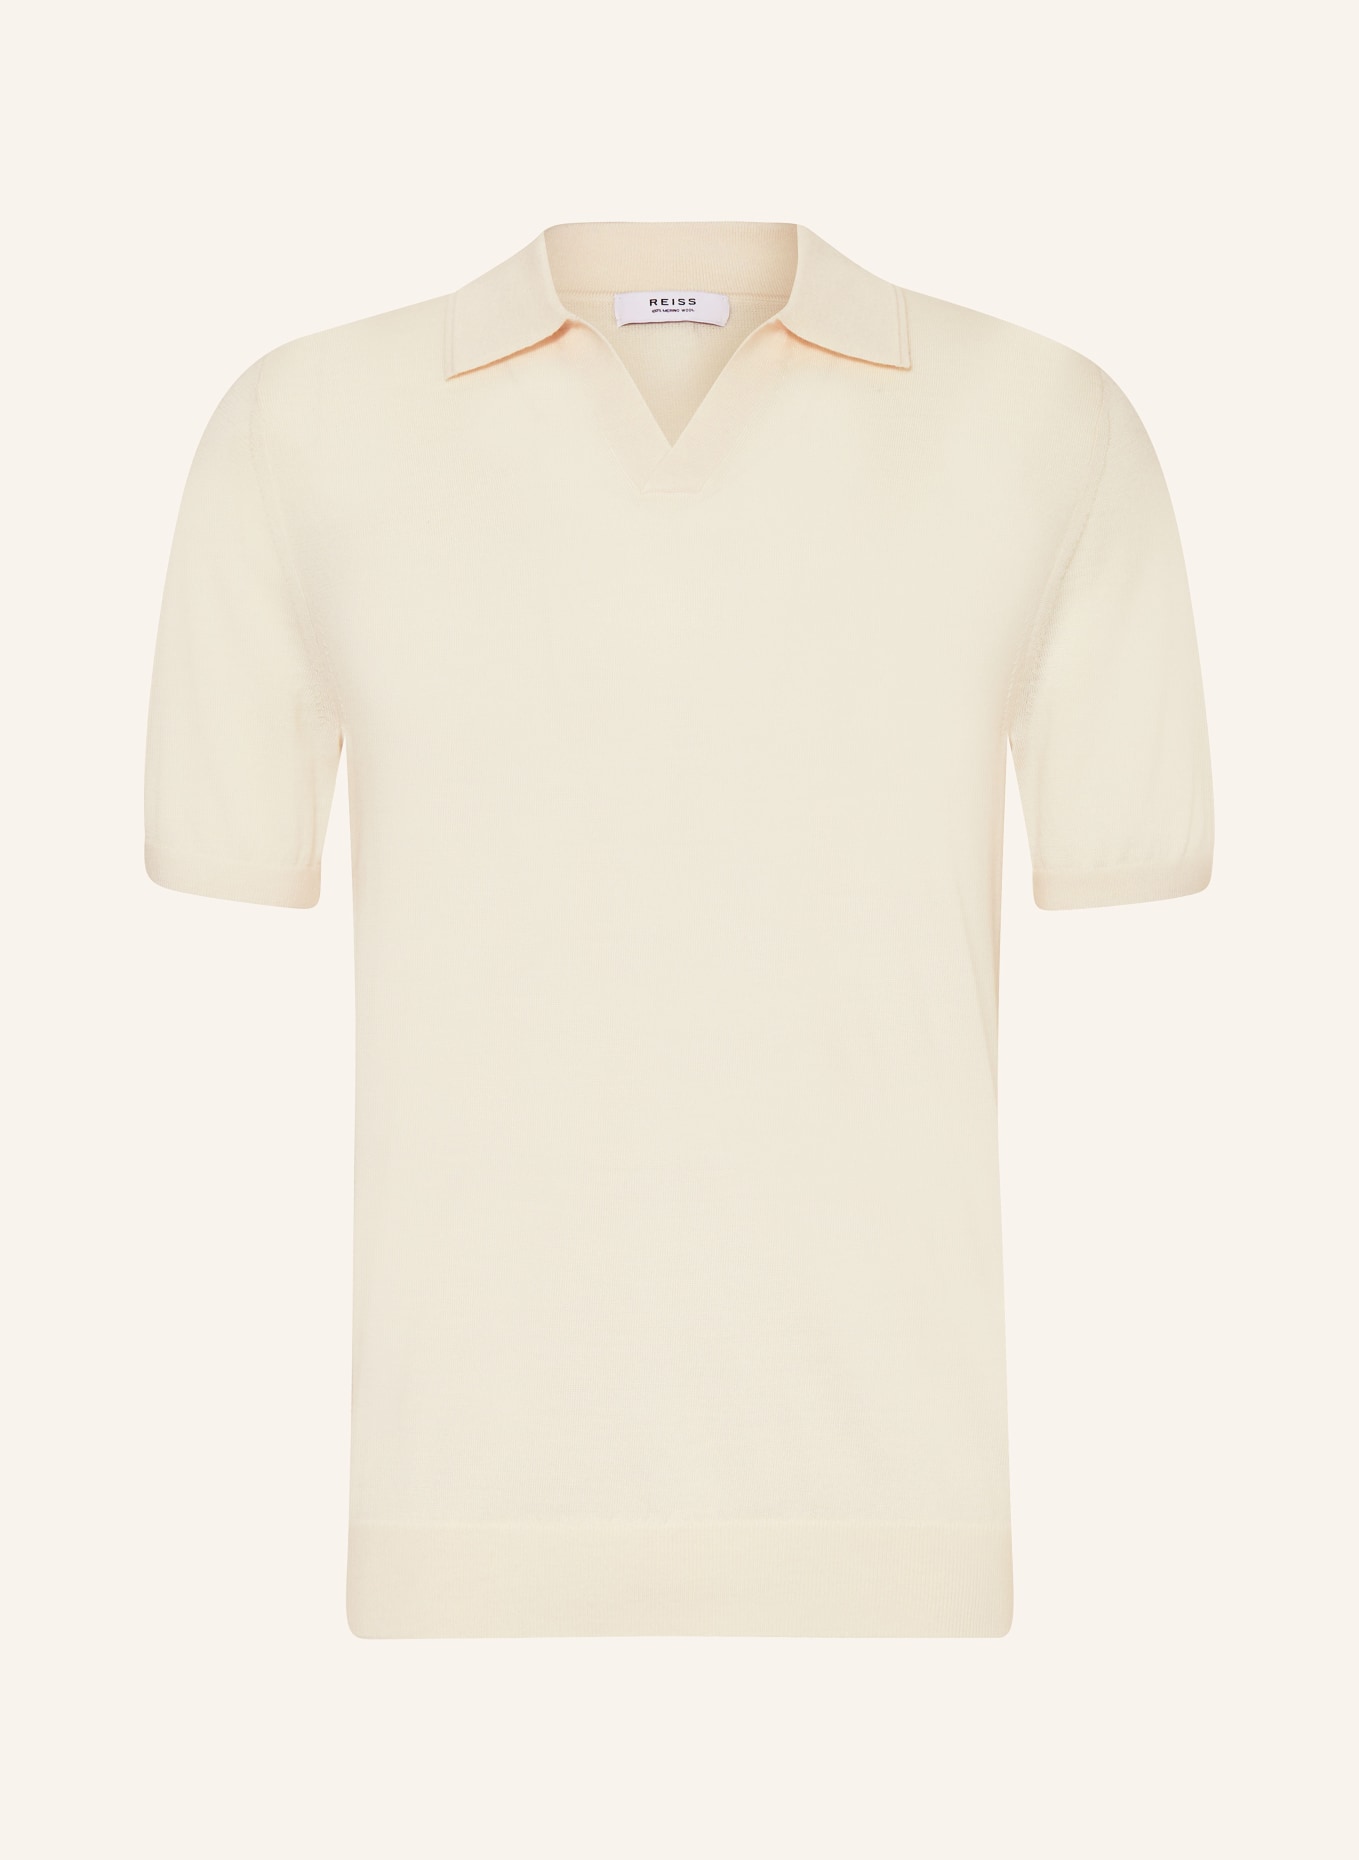 REISS Strick-Poloshirt DUCHIE, Farbe: CREME (Bild 1)